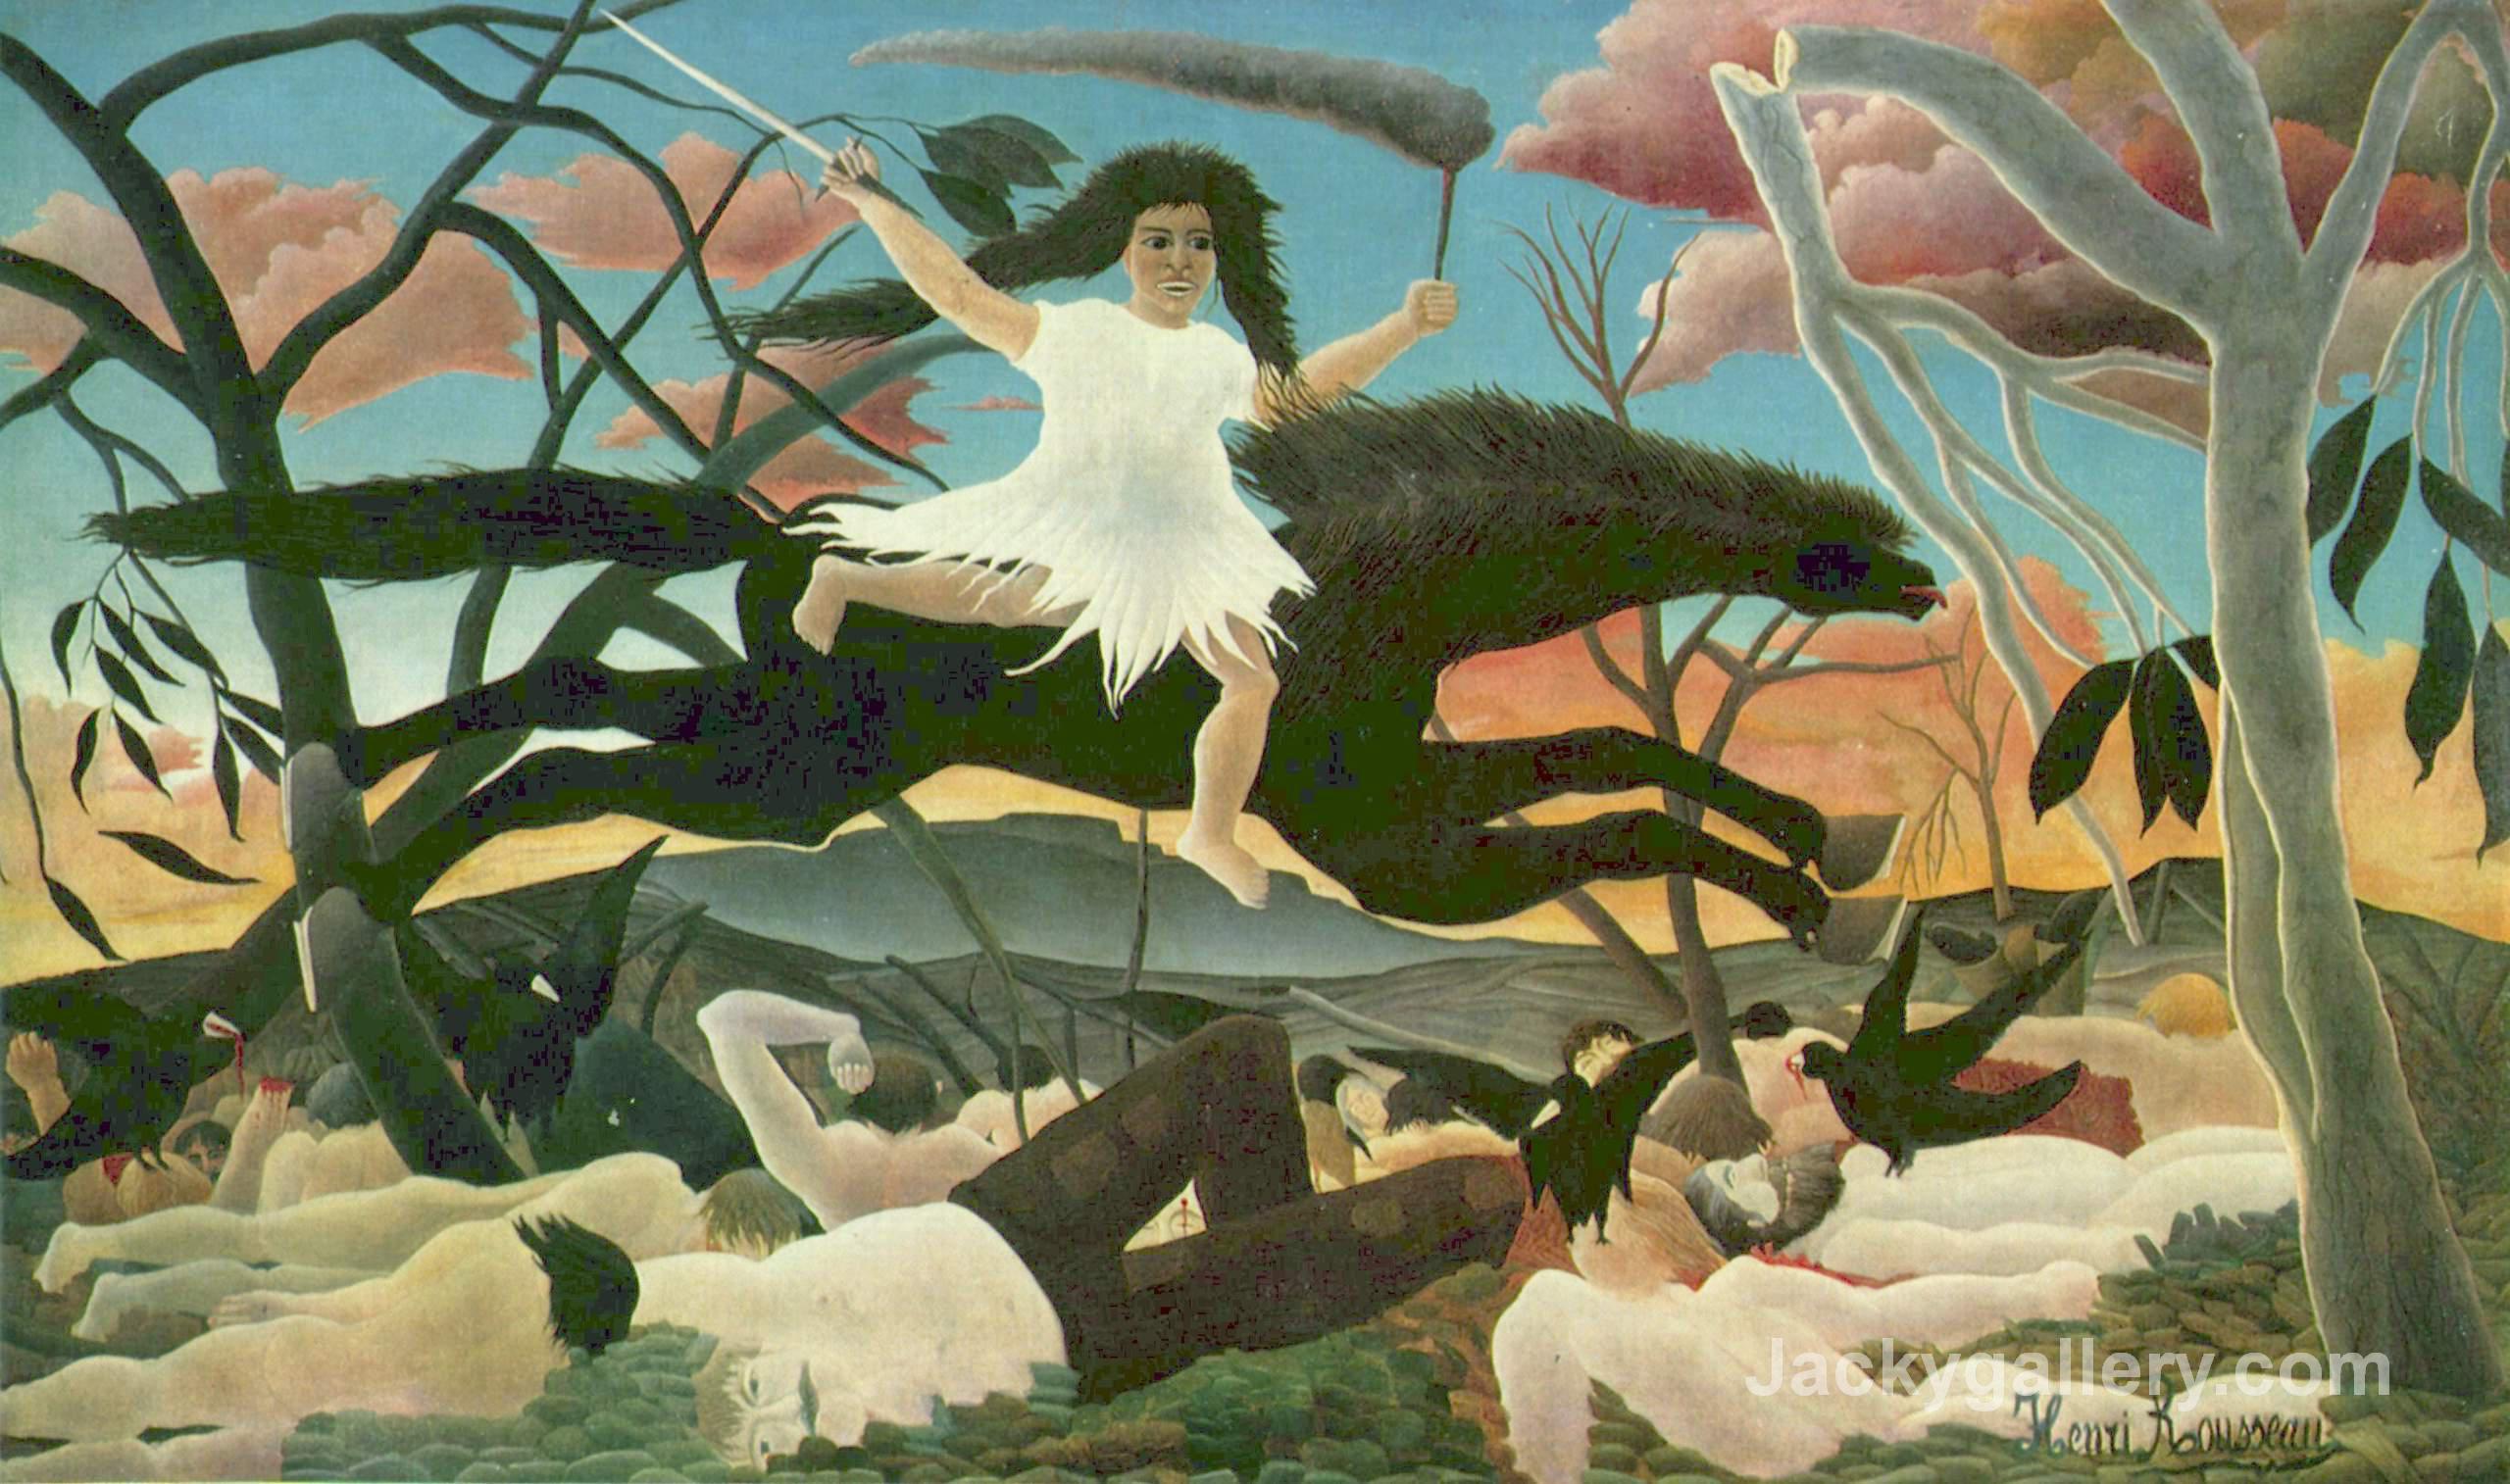 The war (La cabalgada de la discordia) by Henri Rousseau paintings reproduction